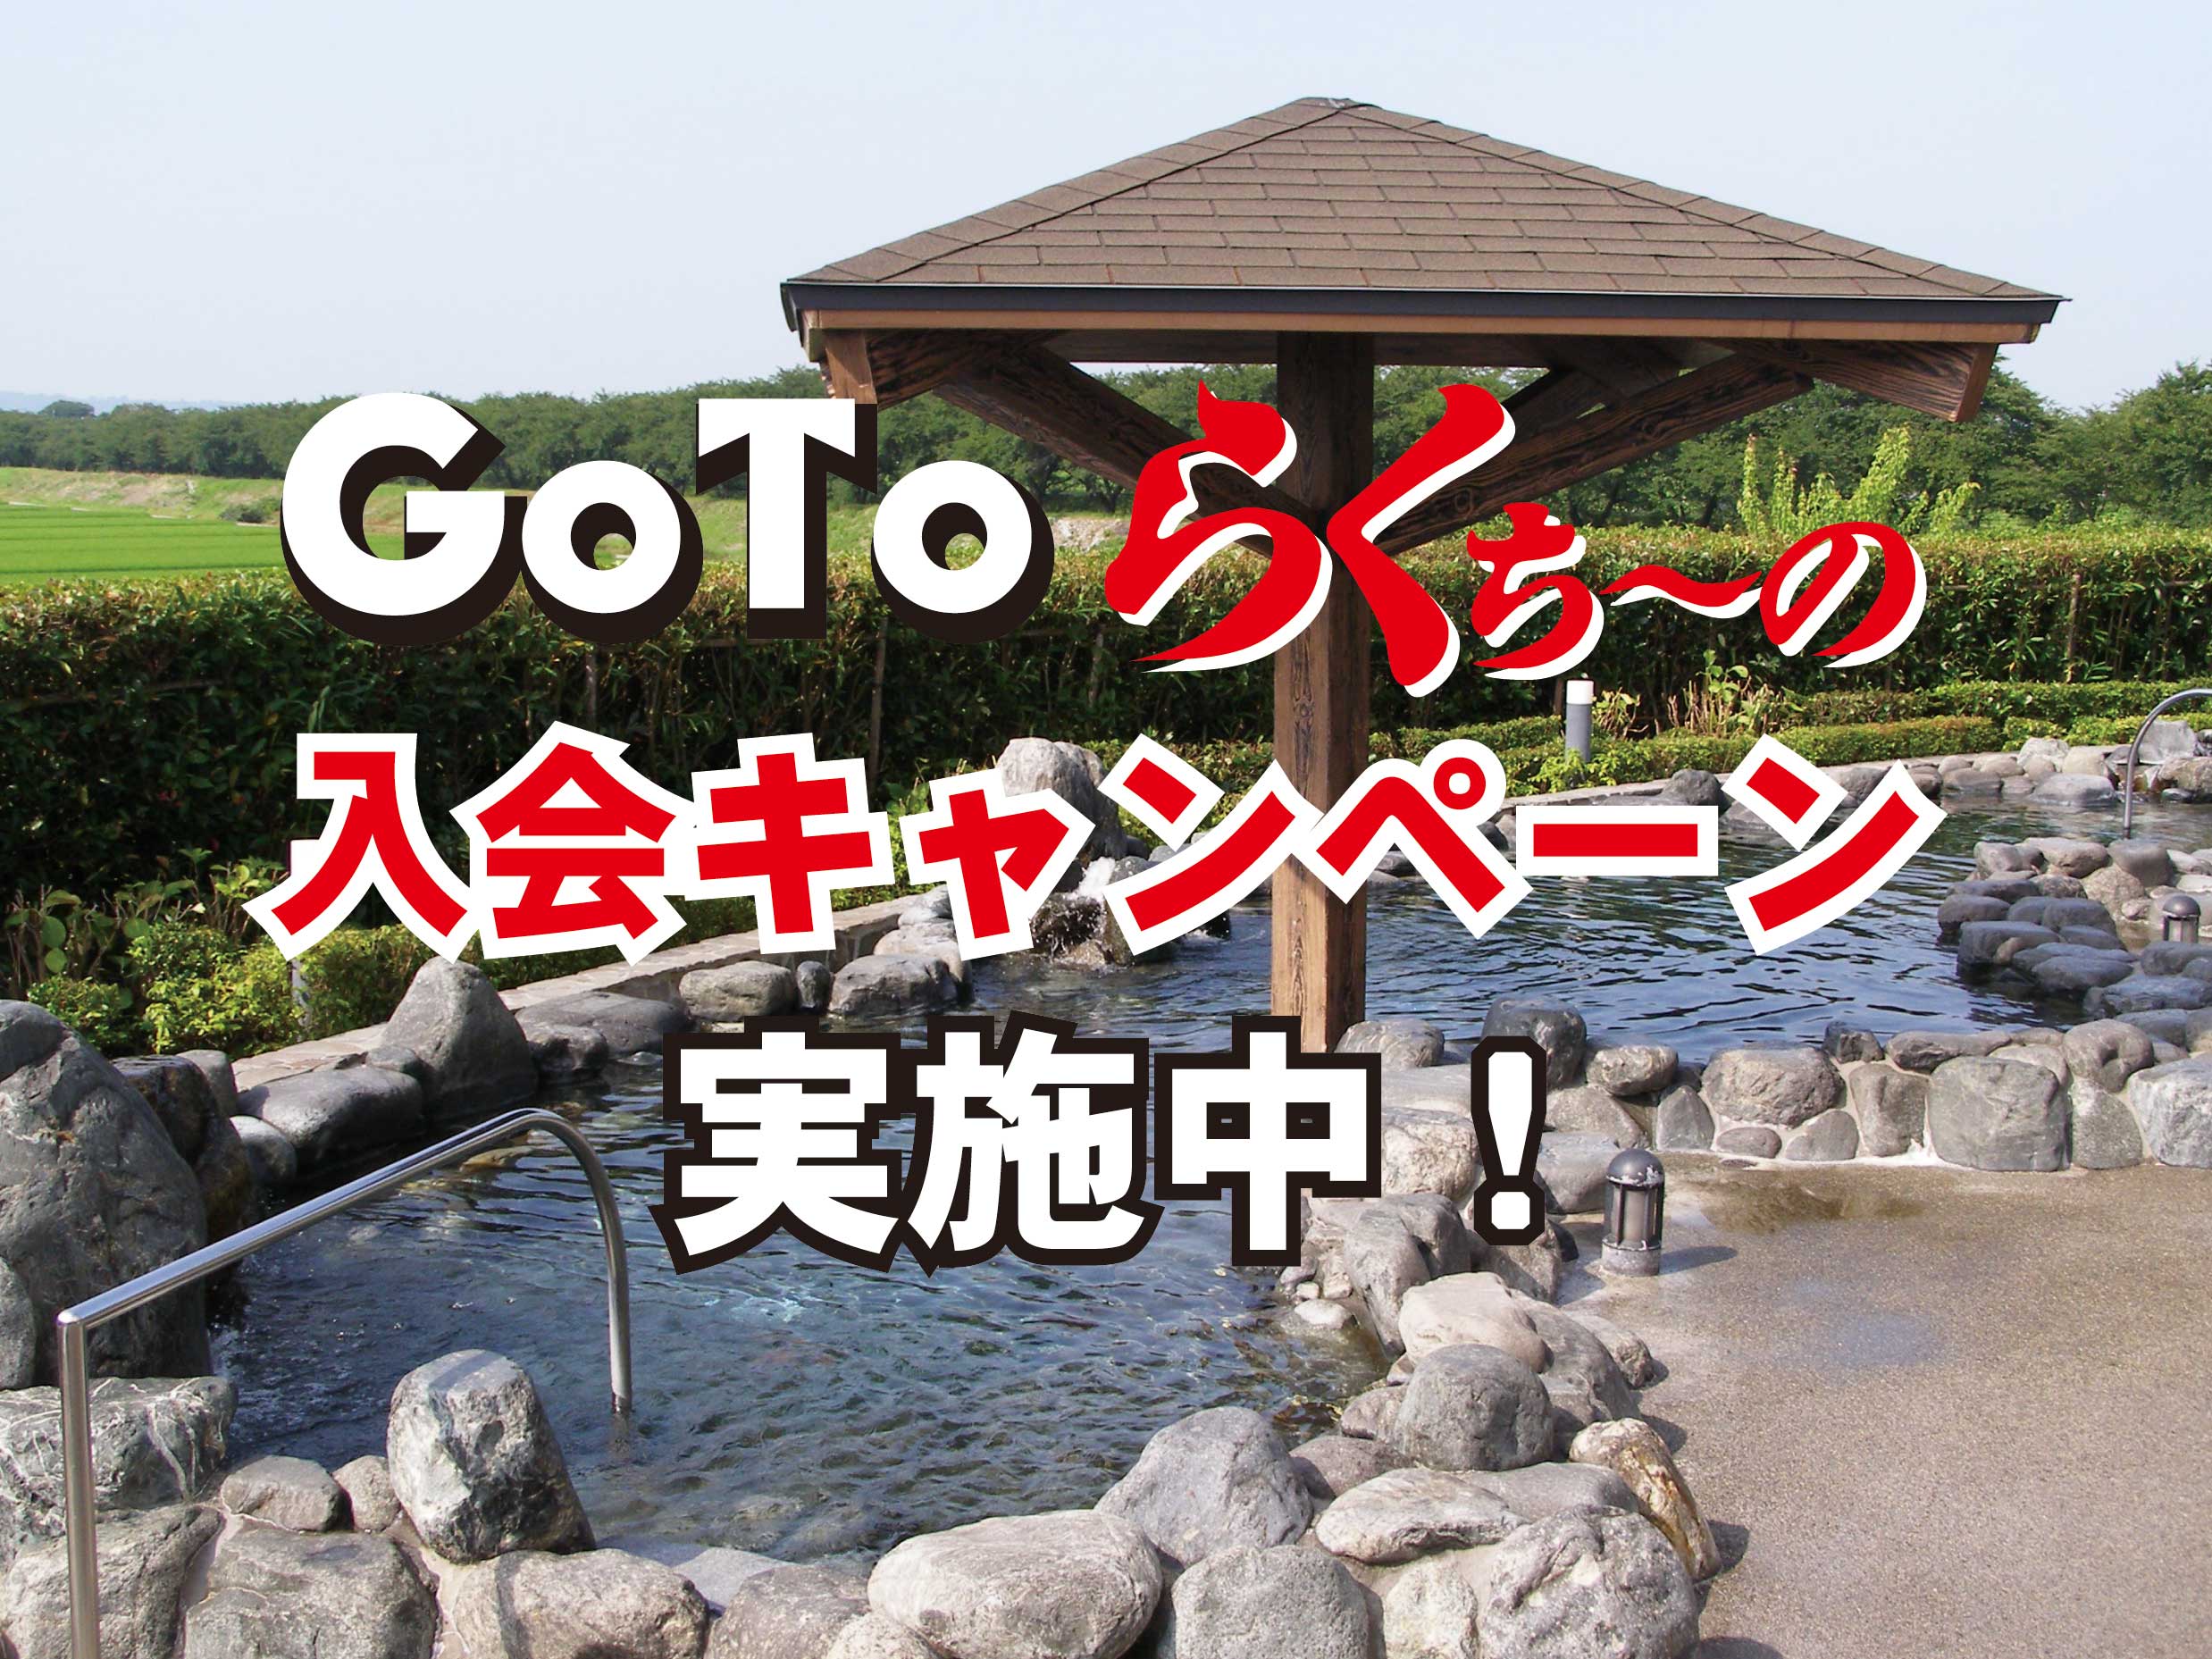 GoTo入会キャンペーン2020.jpg